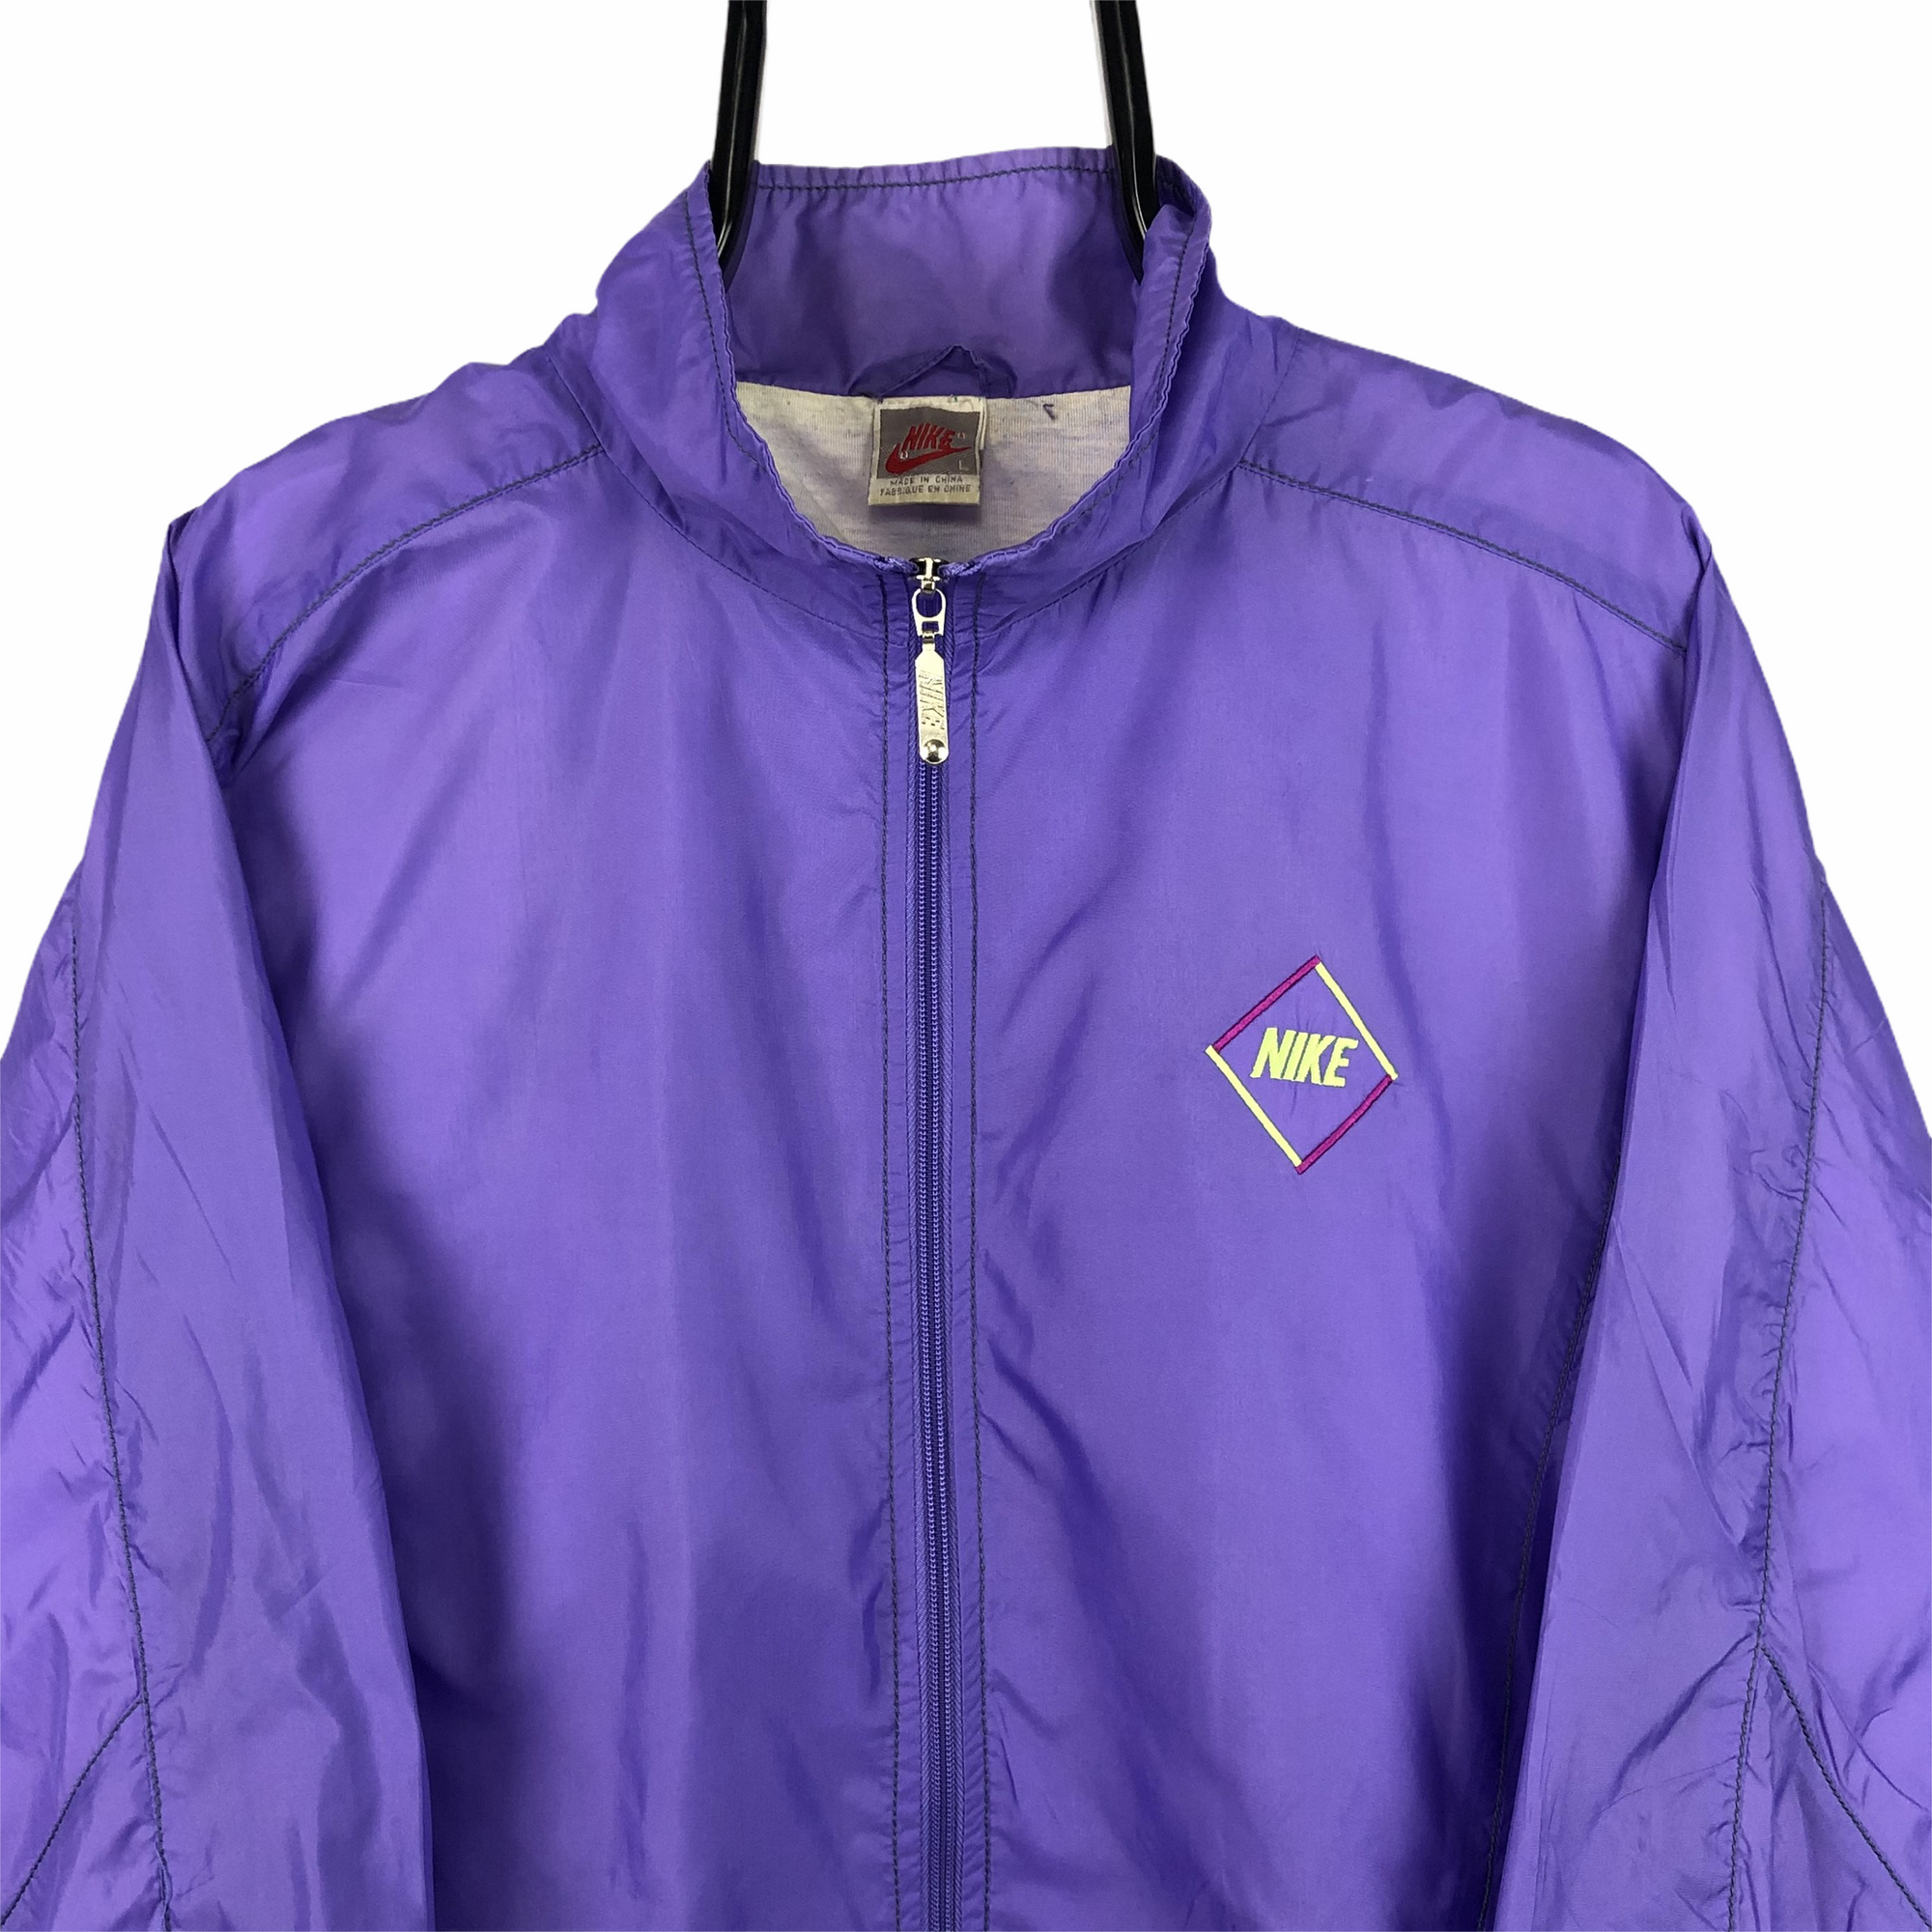 Vintage 80s Nike Track Jacket in Purple - Men's Large/Women's XL